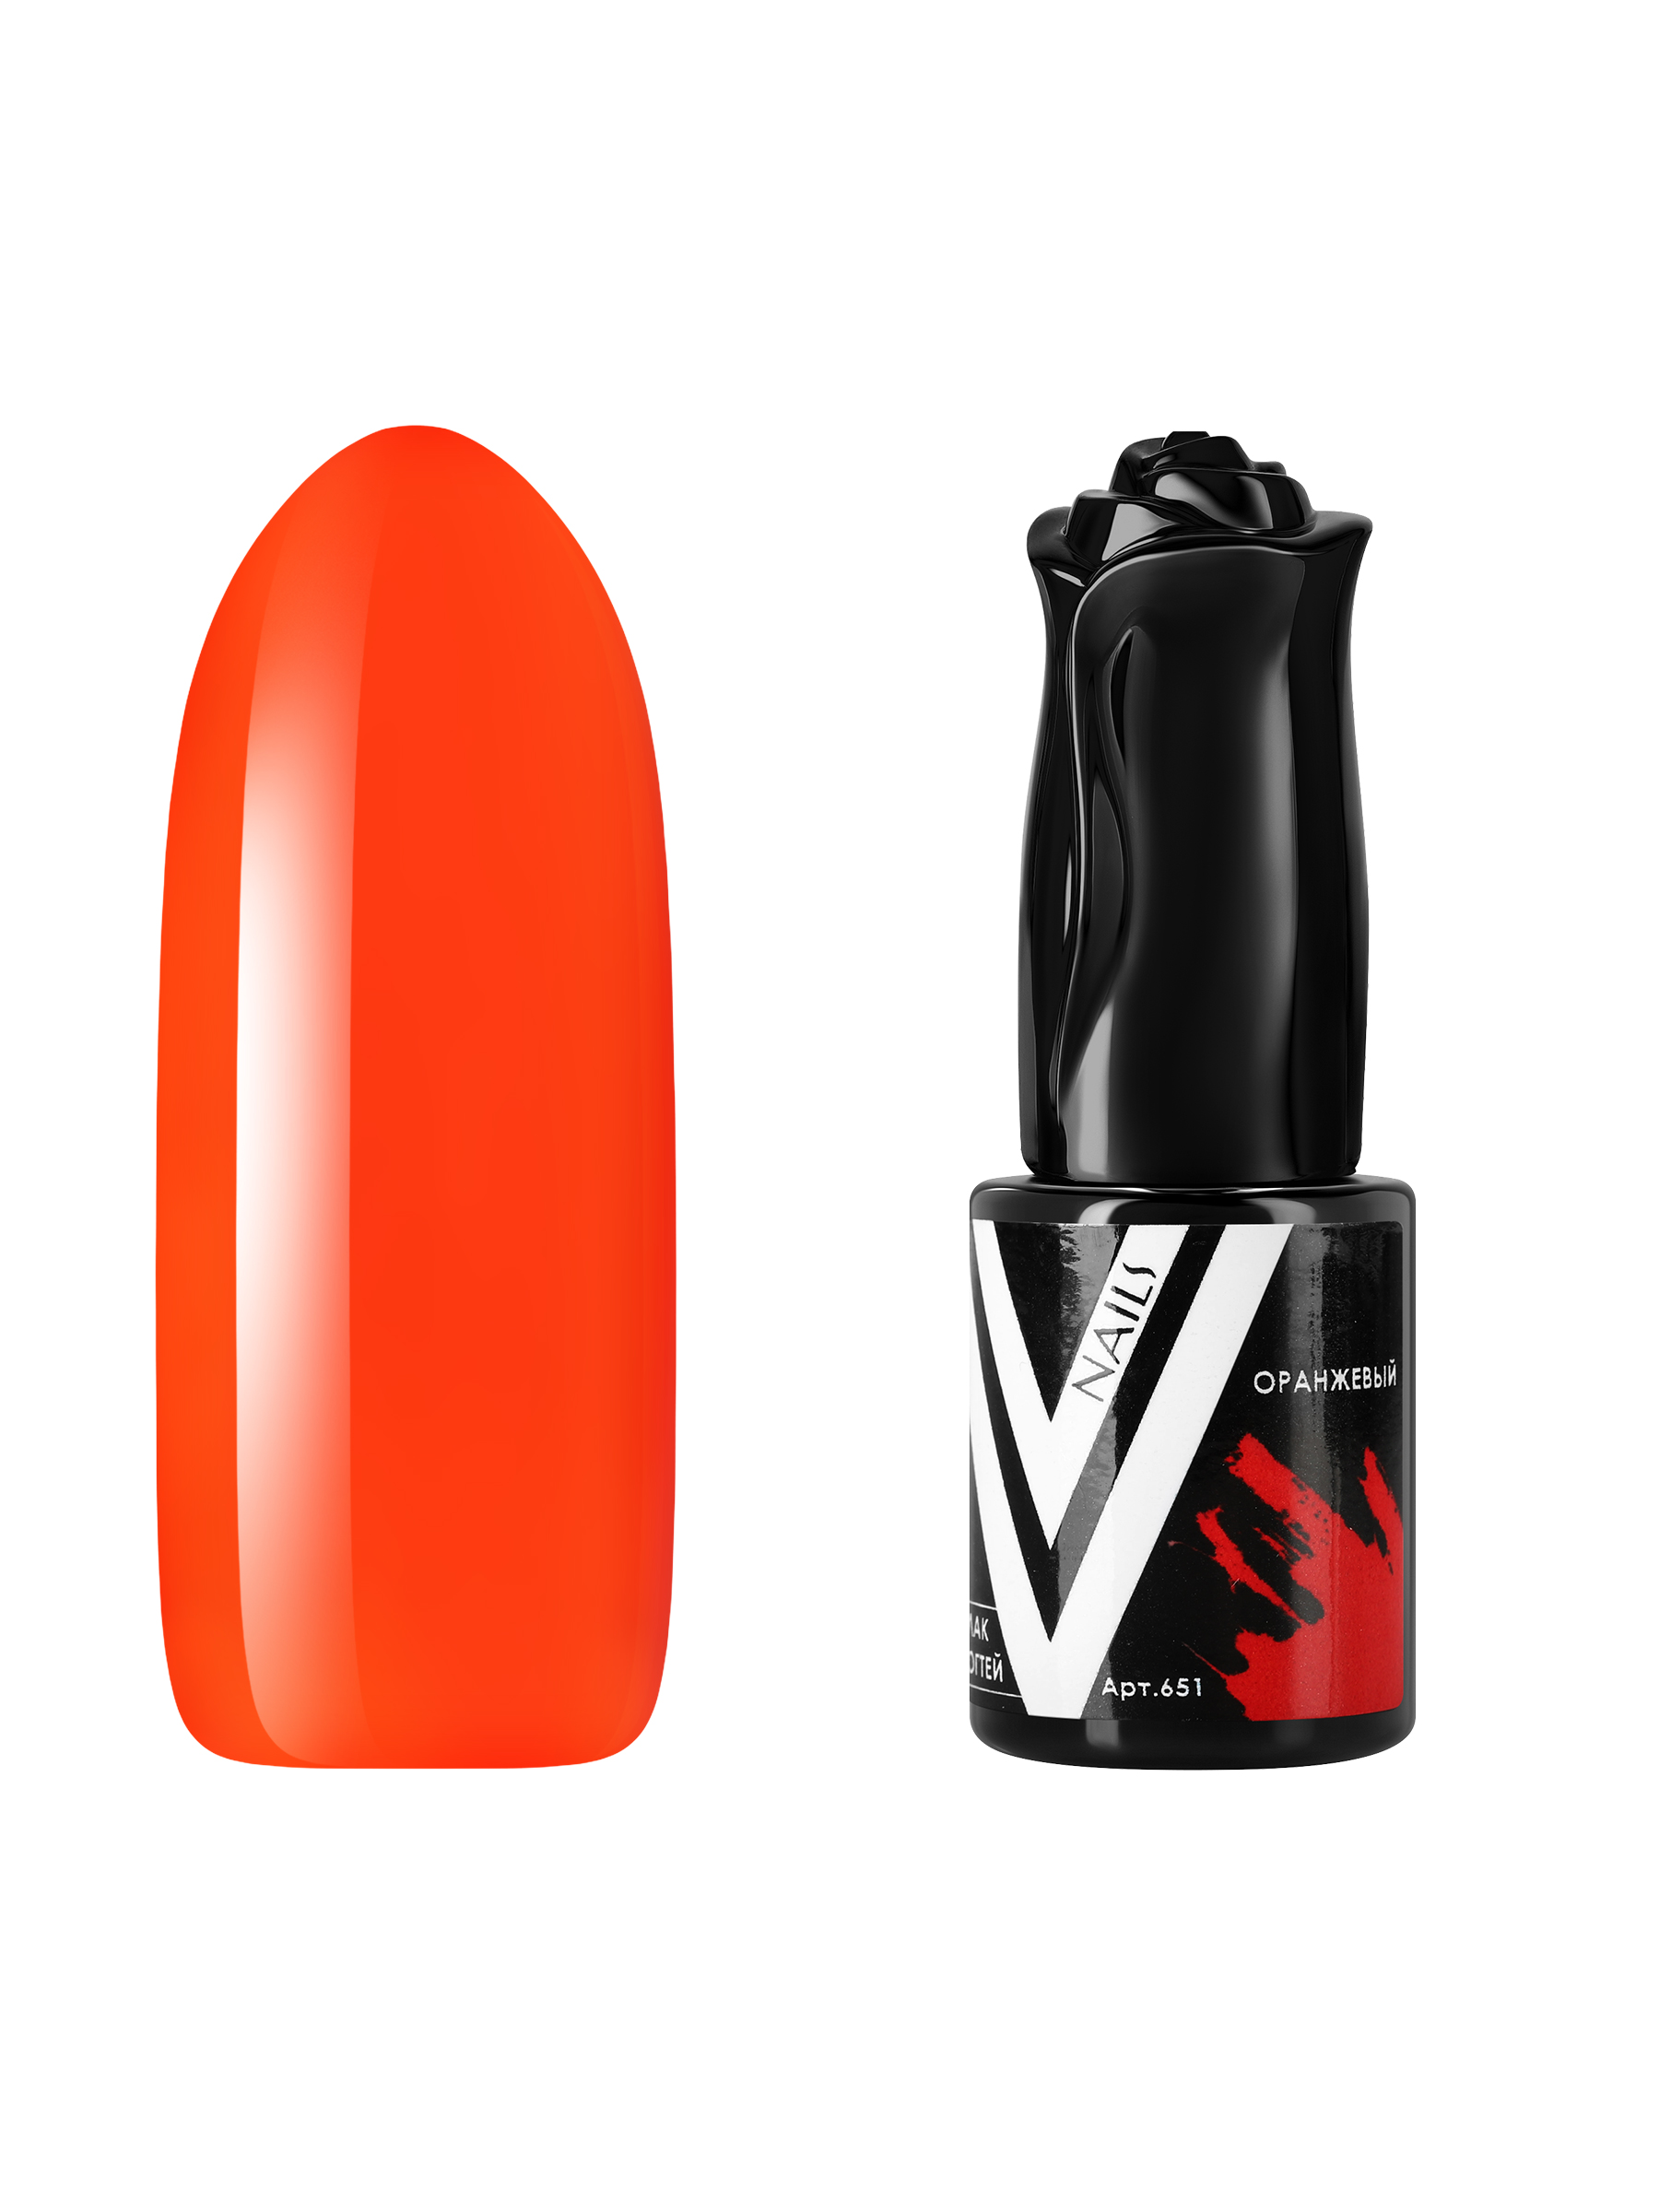 Гель-лак витражный Vogue Nails для аквариумного дизайна, прозрачный, оранжевый, 10 мл аквариумный комплекс biorb cube 60 mcr бесшовный прозрачный 60л